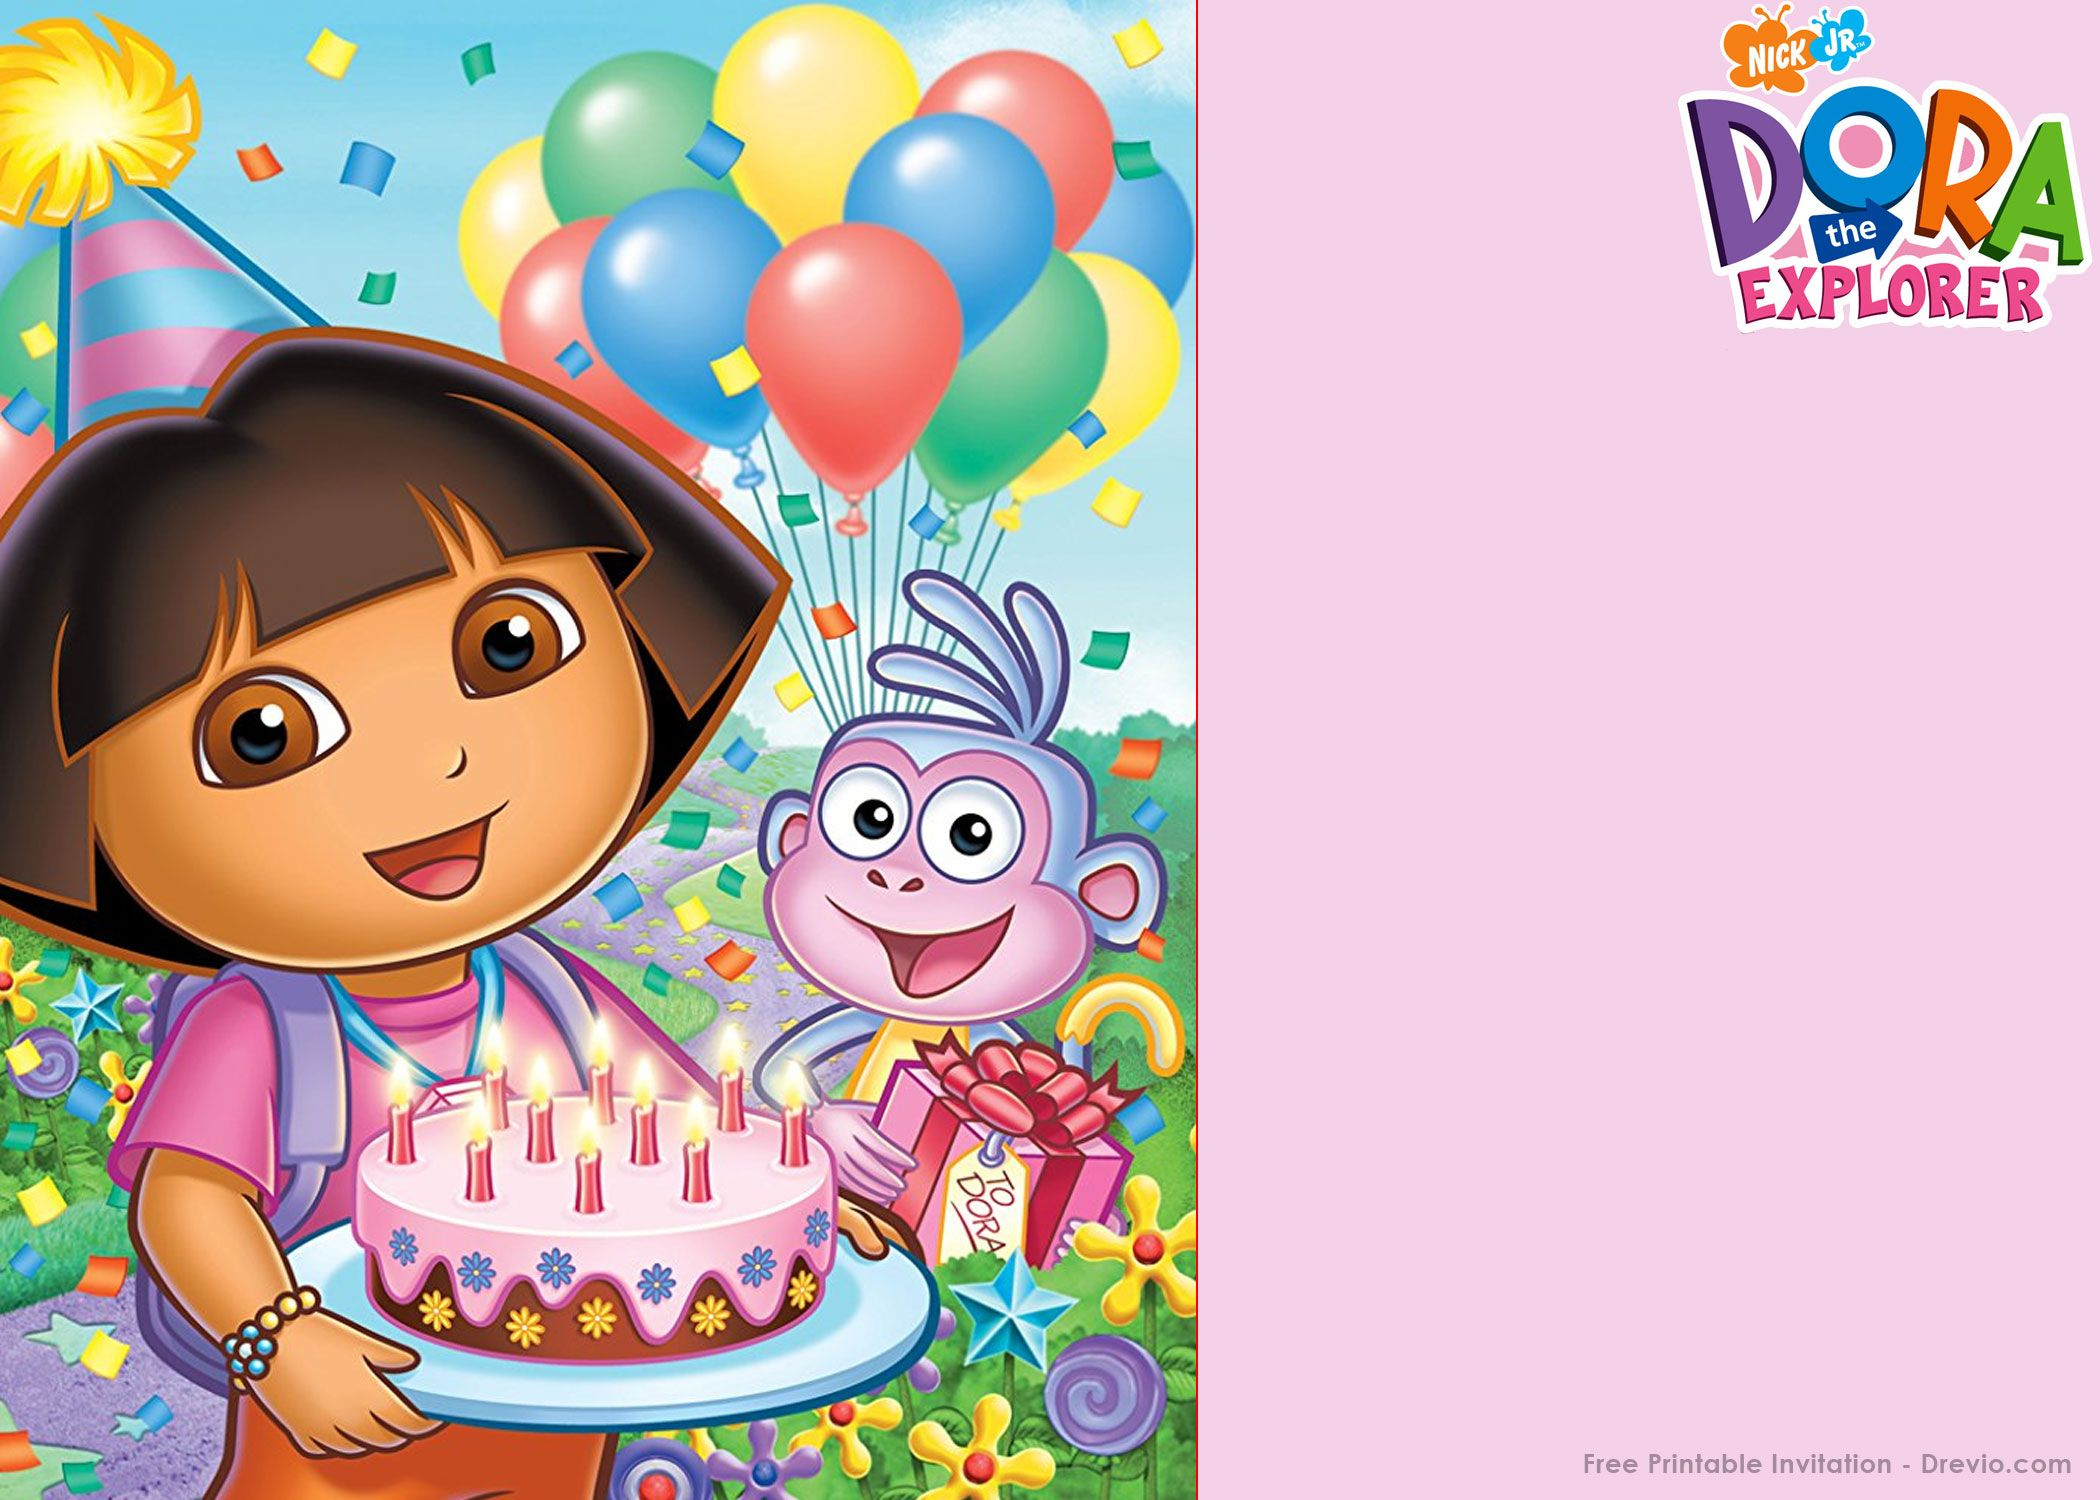 Free Printable Dora The Explorer Party Invitation Template - Dora The Explorer Free Printable Invitations